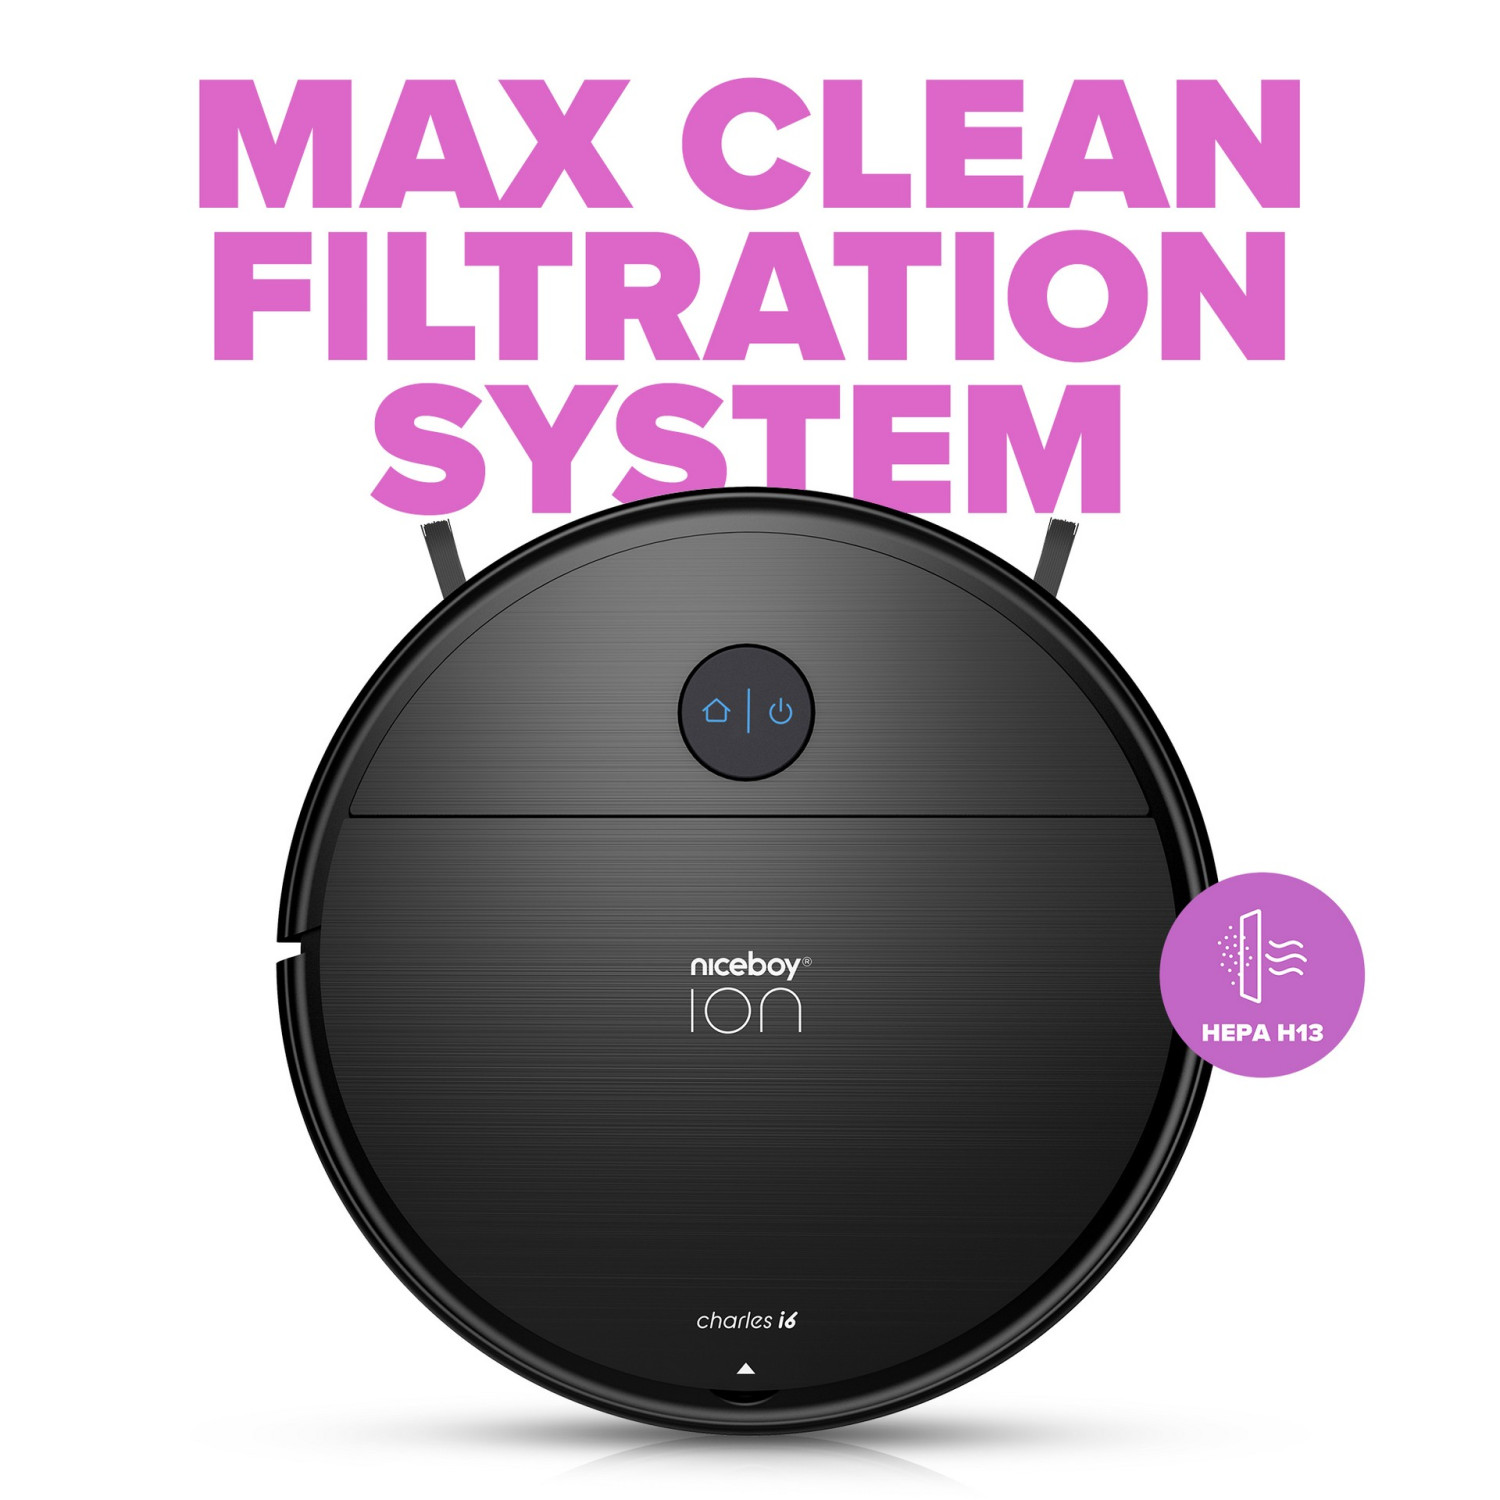 Najwyższa ochrona przed brudem i alergenami dzięki systemowi filtracji z technologią MAX Clean